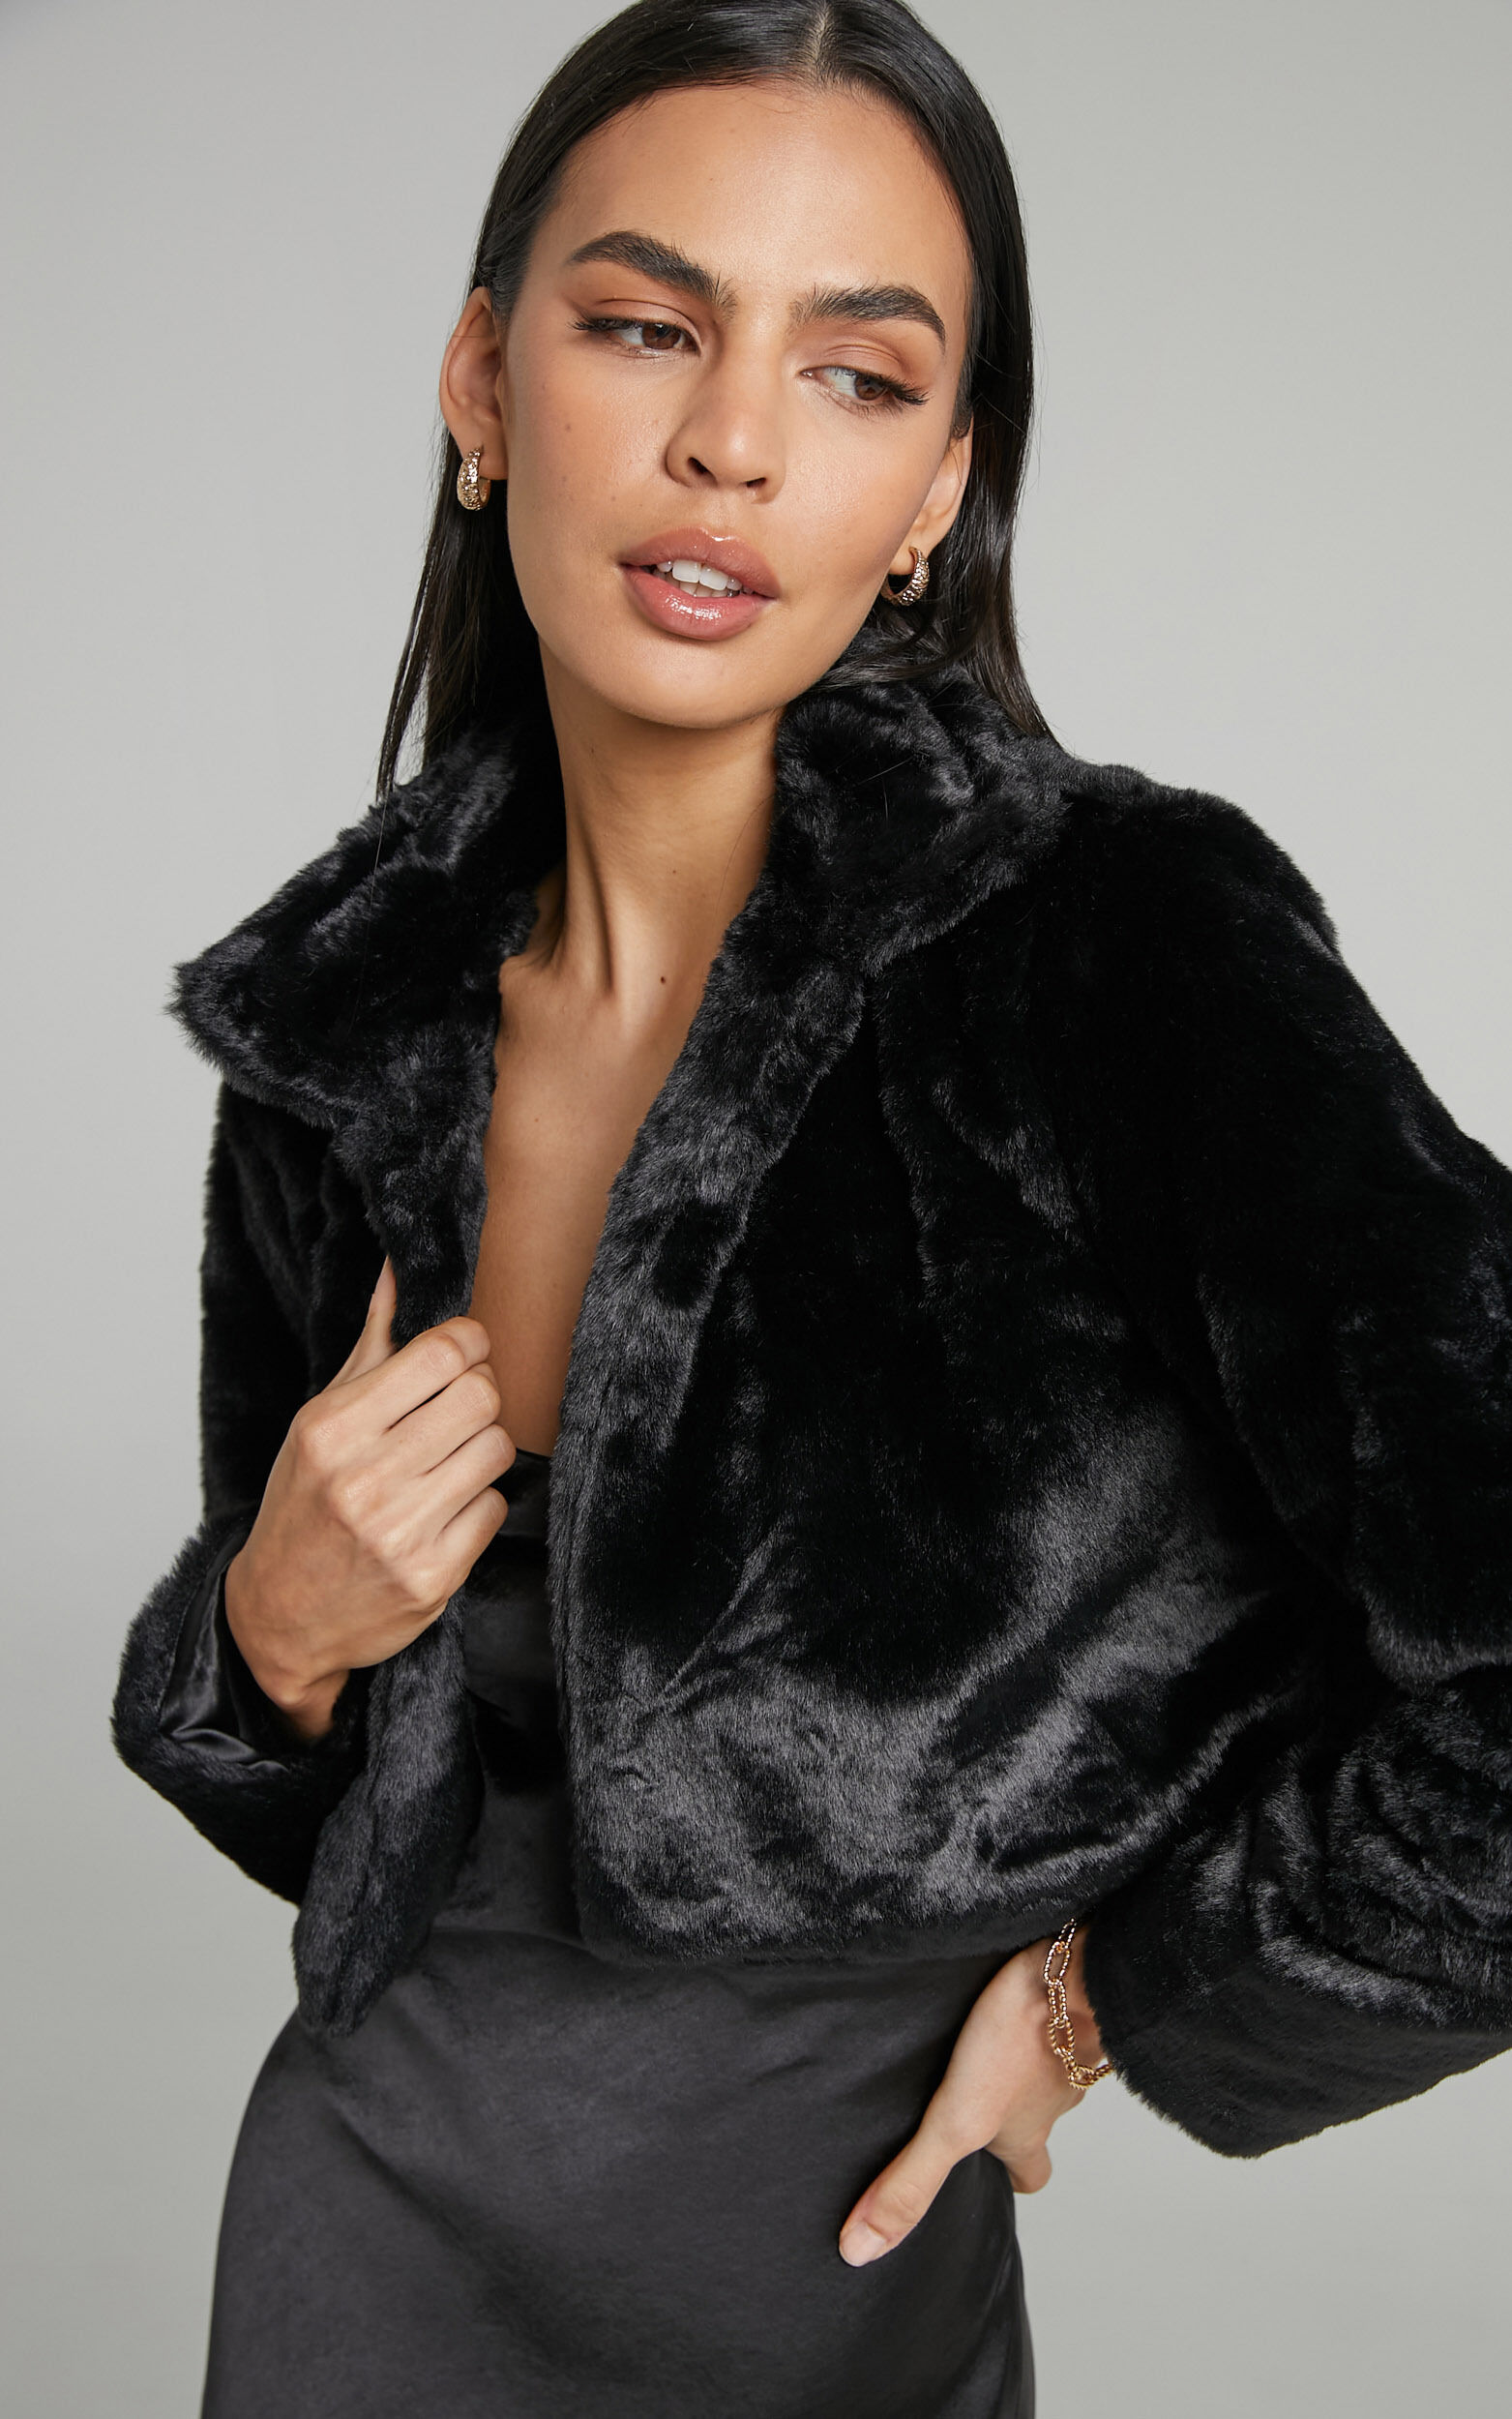 Women Elegant Cropped Faux Fur Coat Party Dresses Coat Black White